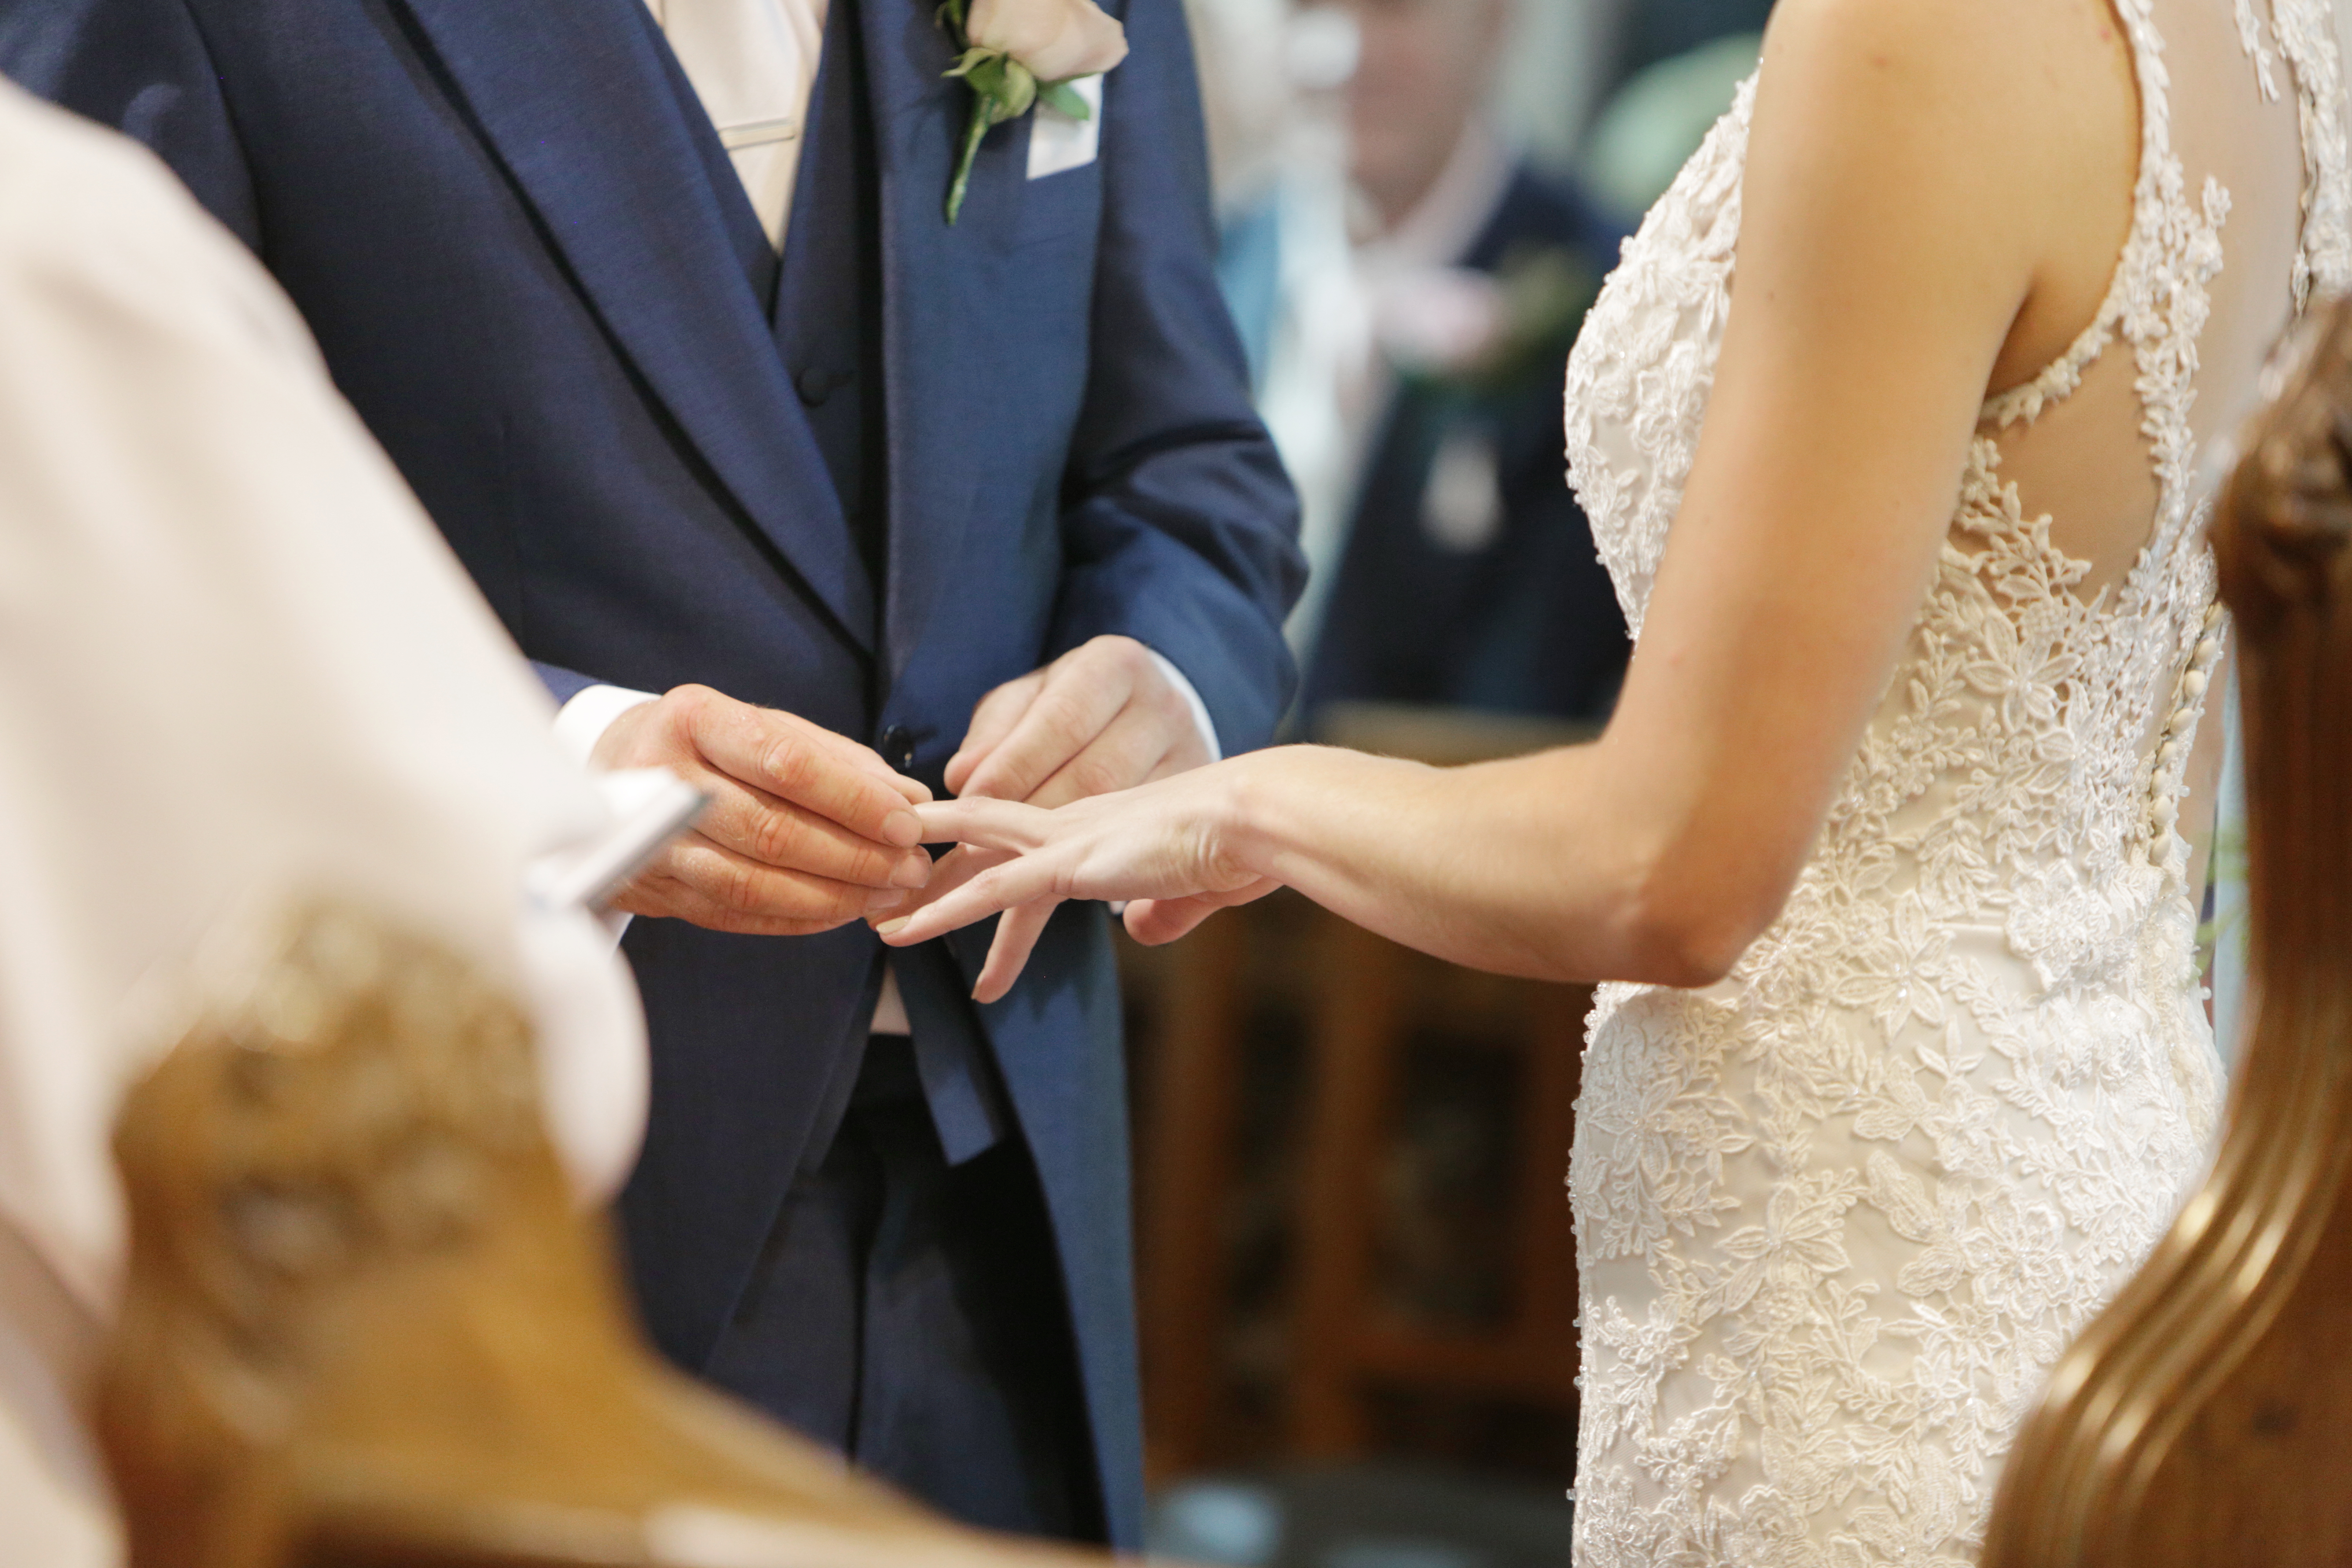 Un couple se marie à l'église | Source : Getty Images